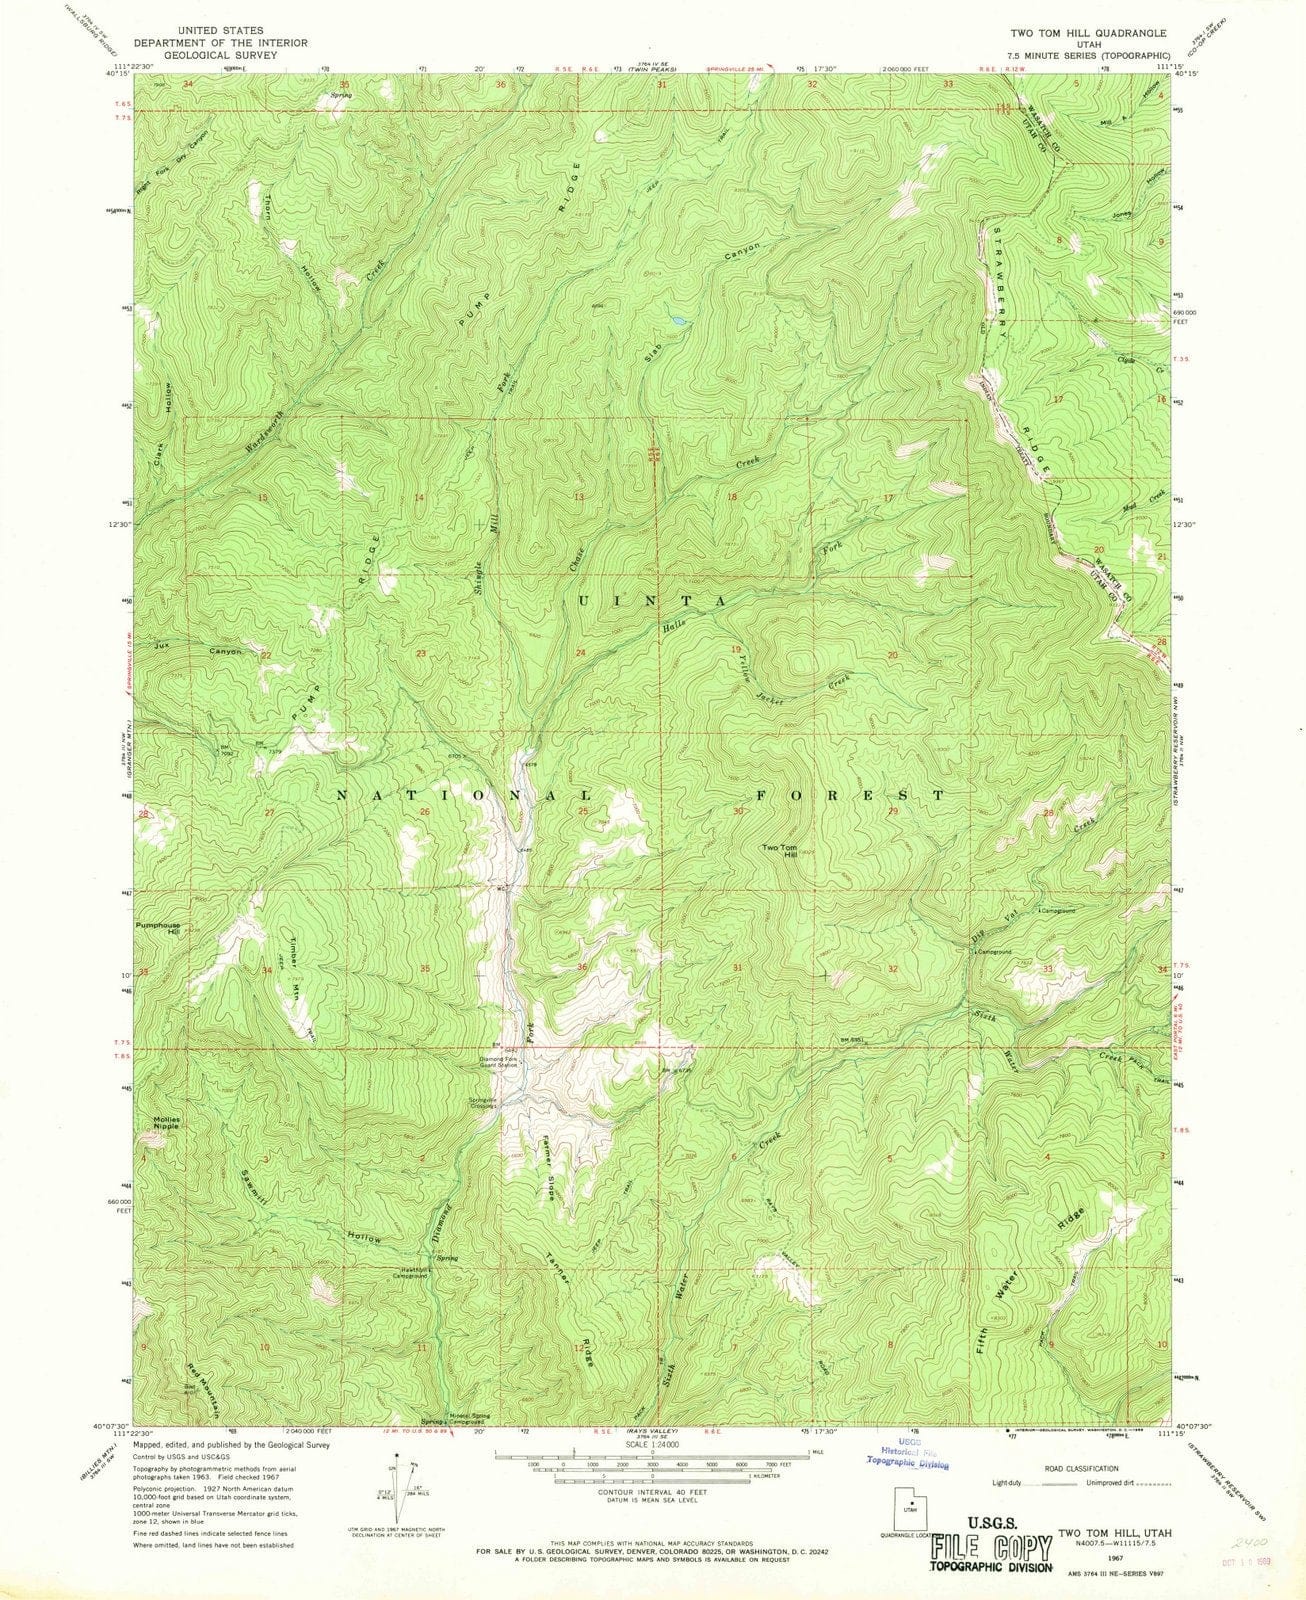 1967 Two Tom Hill, UT - Utah - USGS Topographic Map